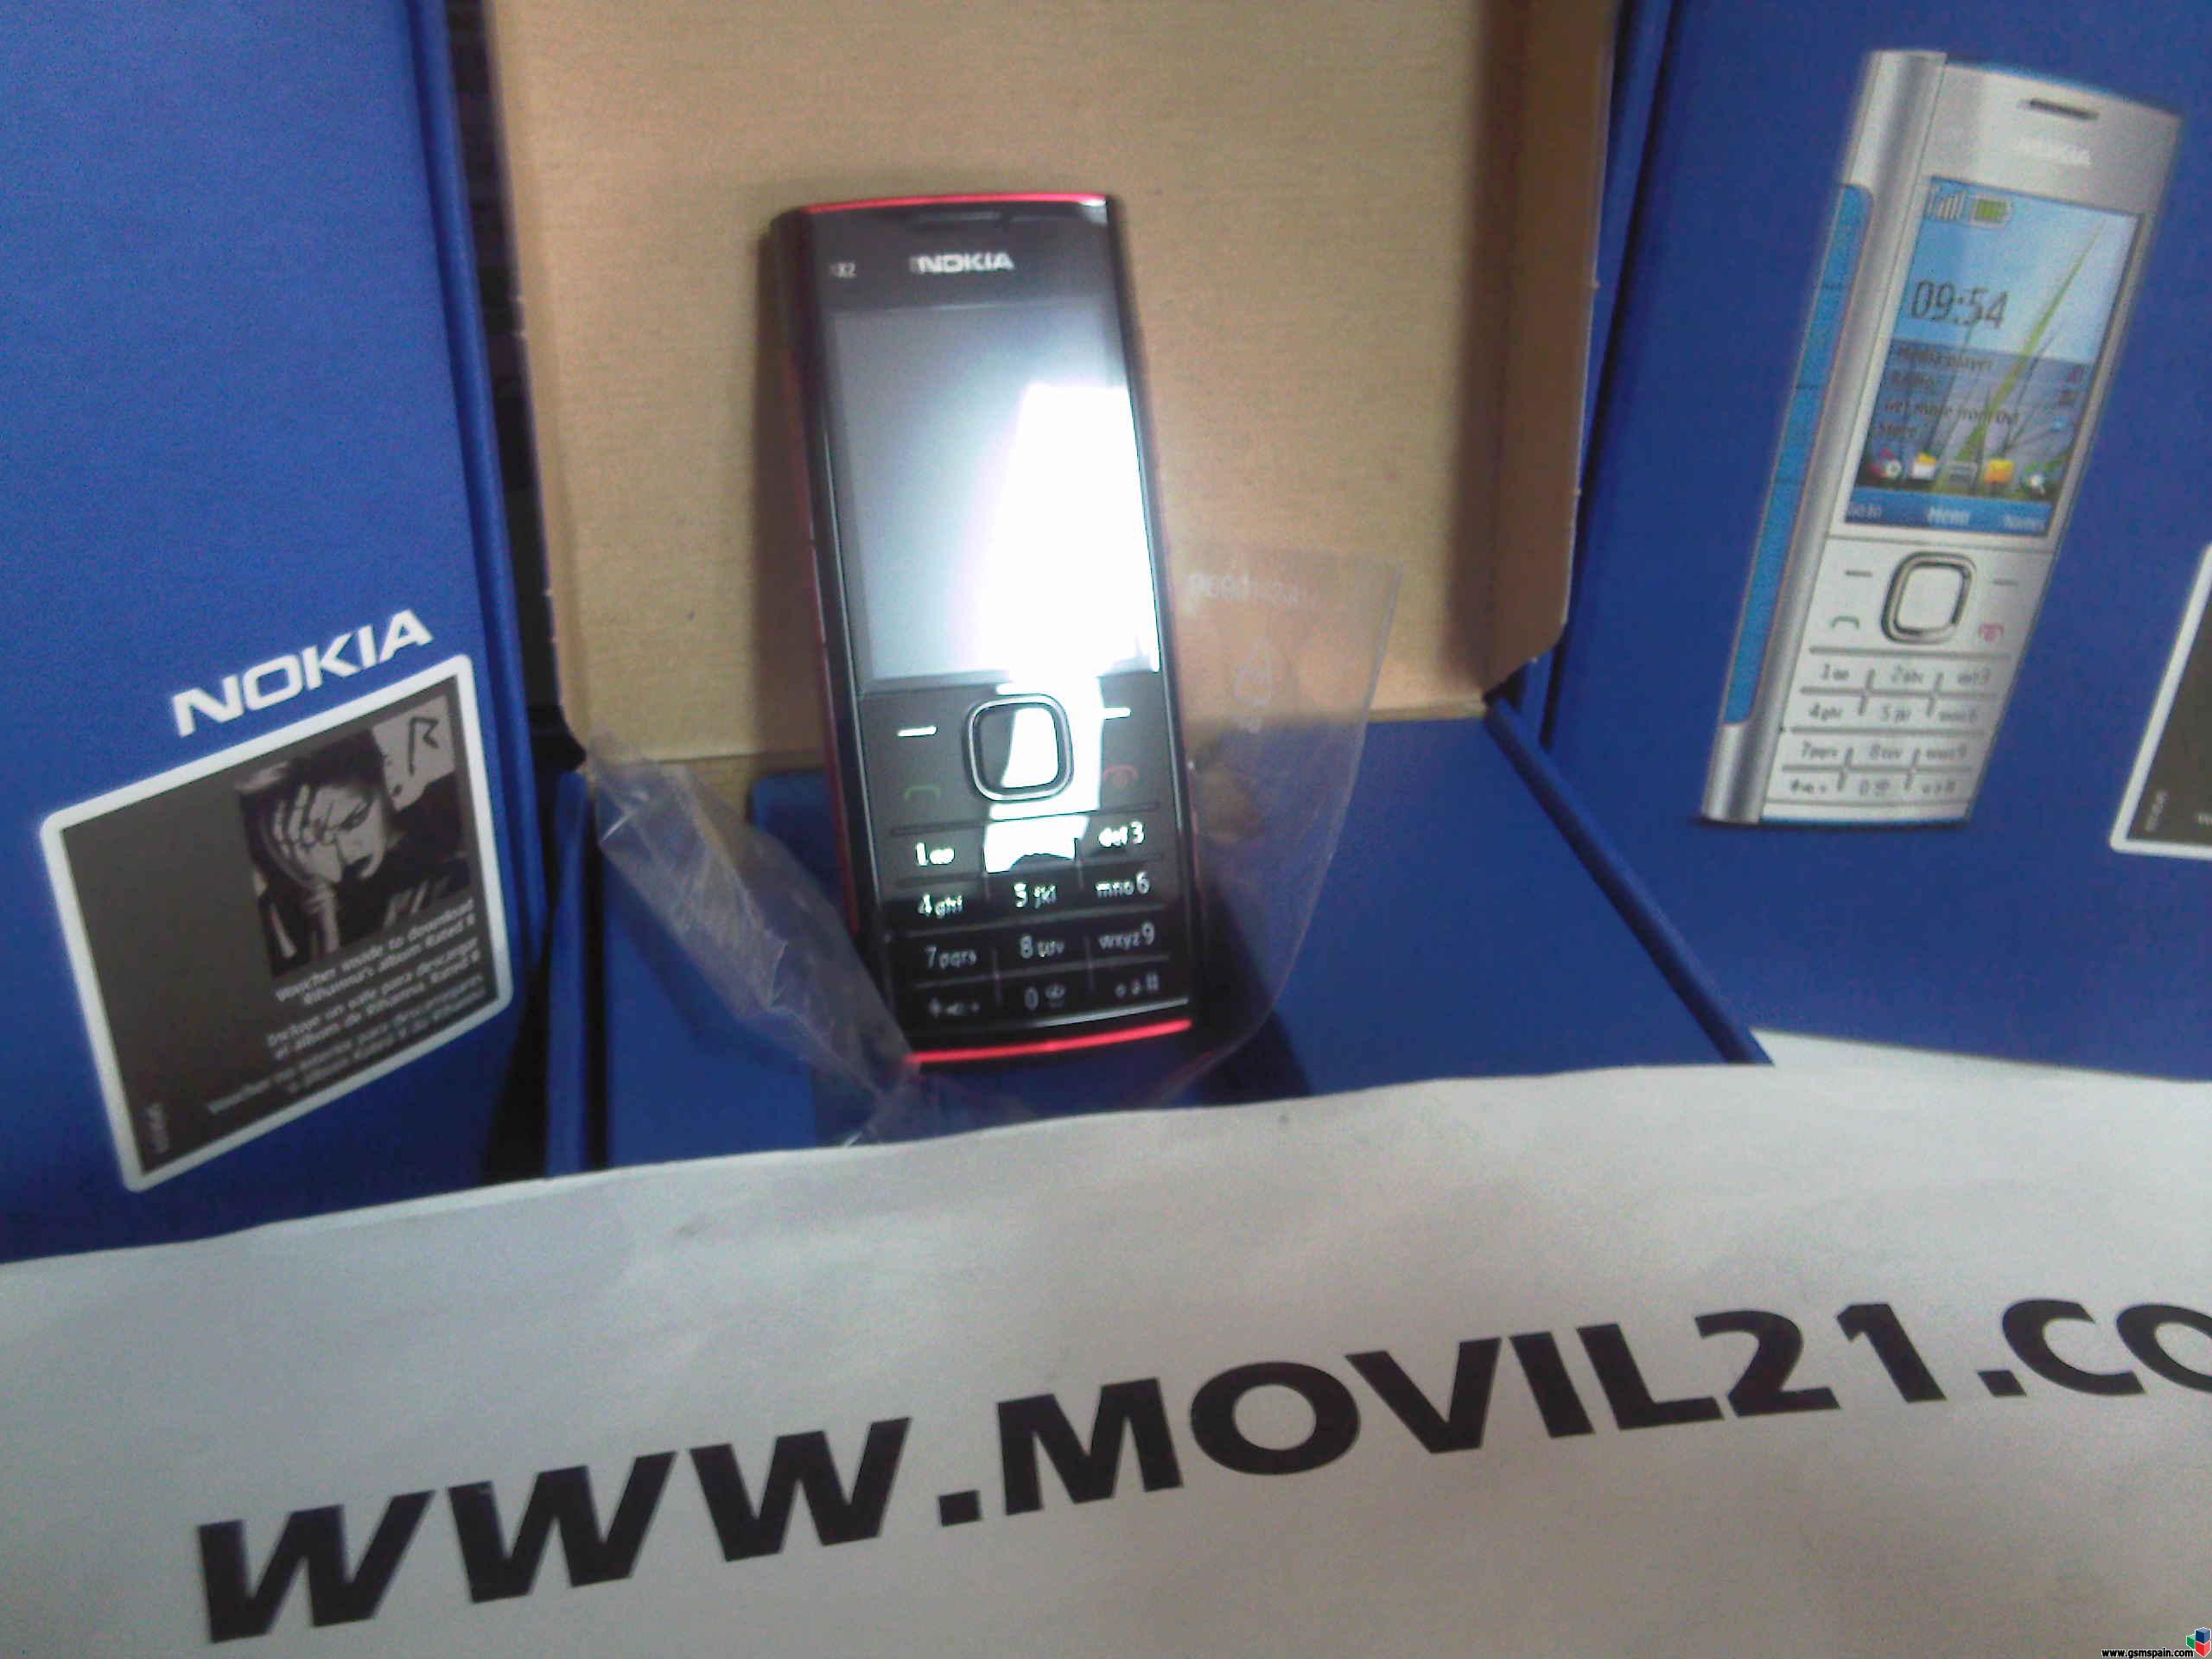 Nokia X2 - 00 www.movil21.com